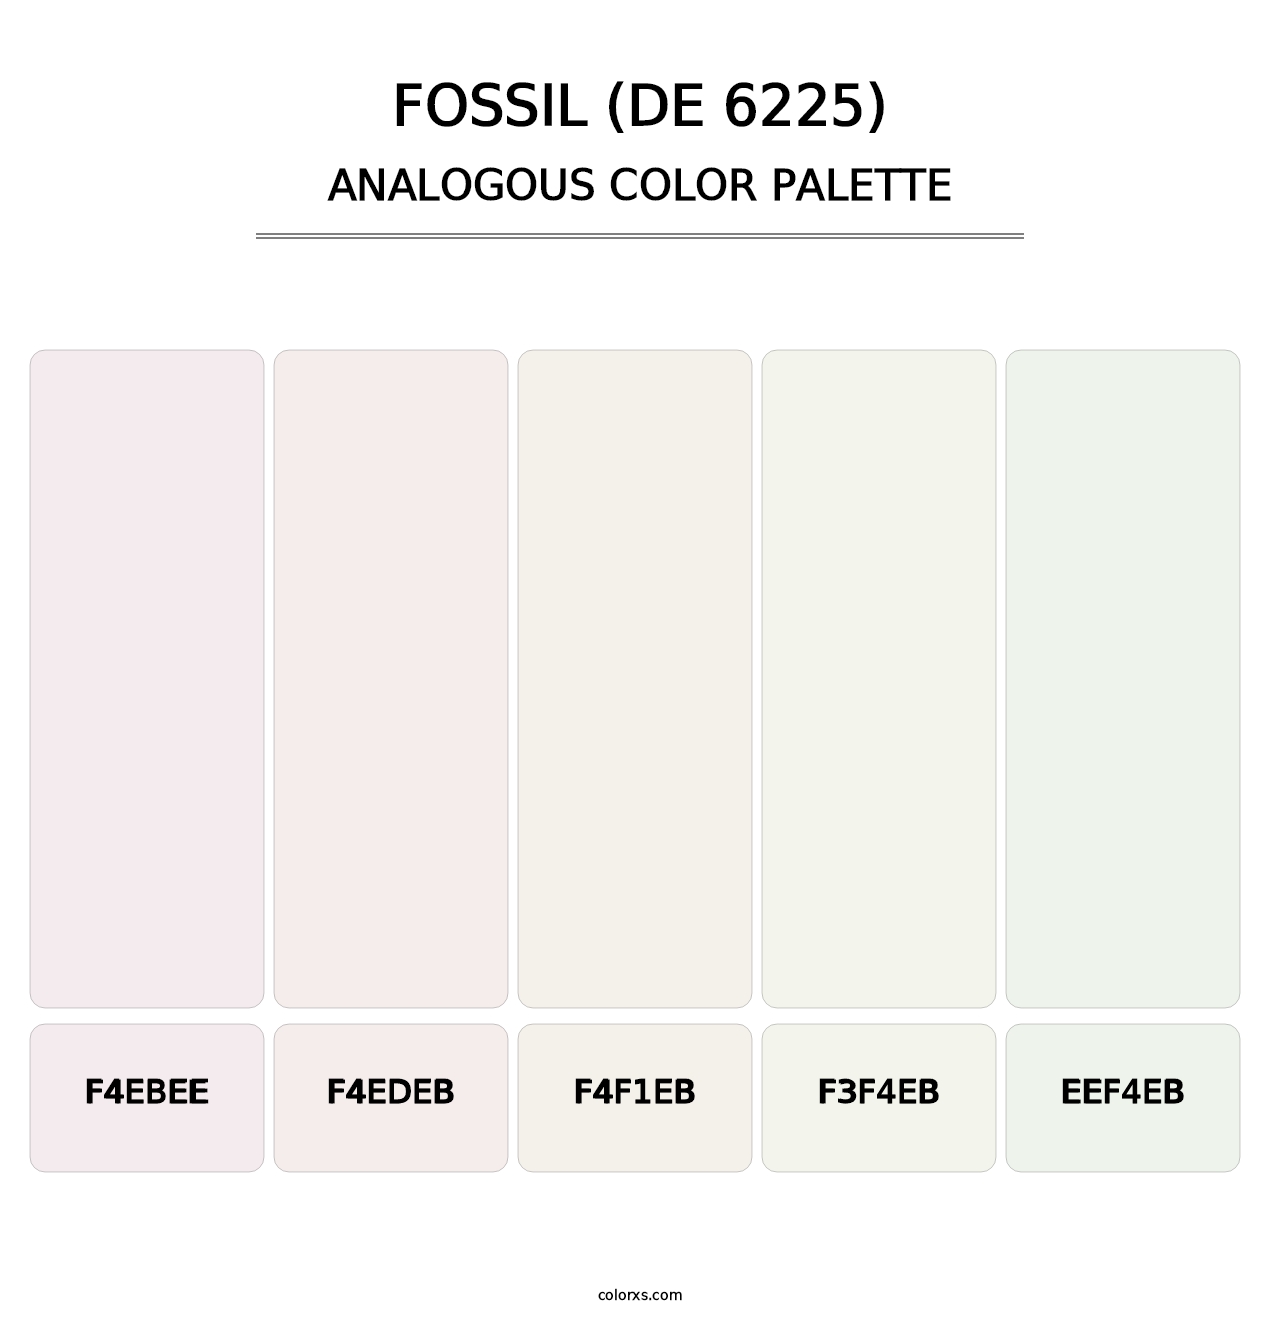 Fossil (DE 6225) - Analogous Color Palette